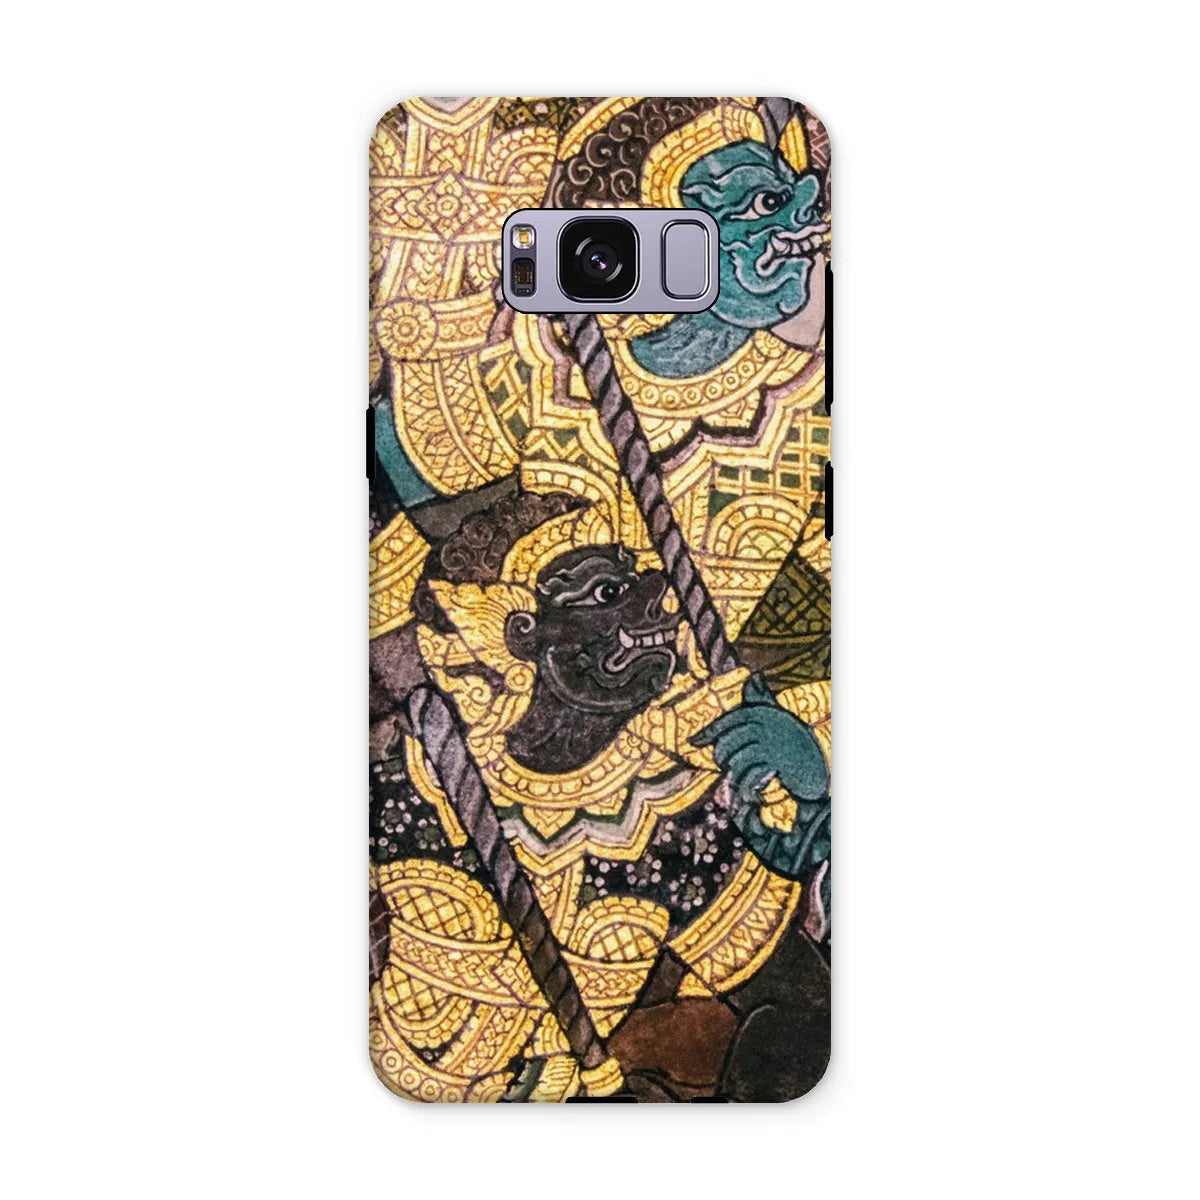 Action Men - Ancient Thai Temple Art Phone Case - Samsung Galaxy S8 Plus / Matte - Mobile Phone Cases - Aesthetic Art